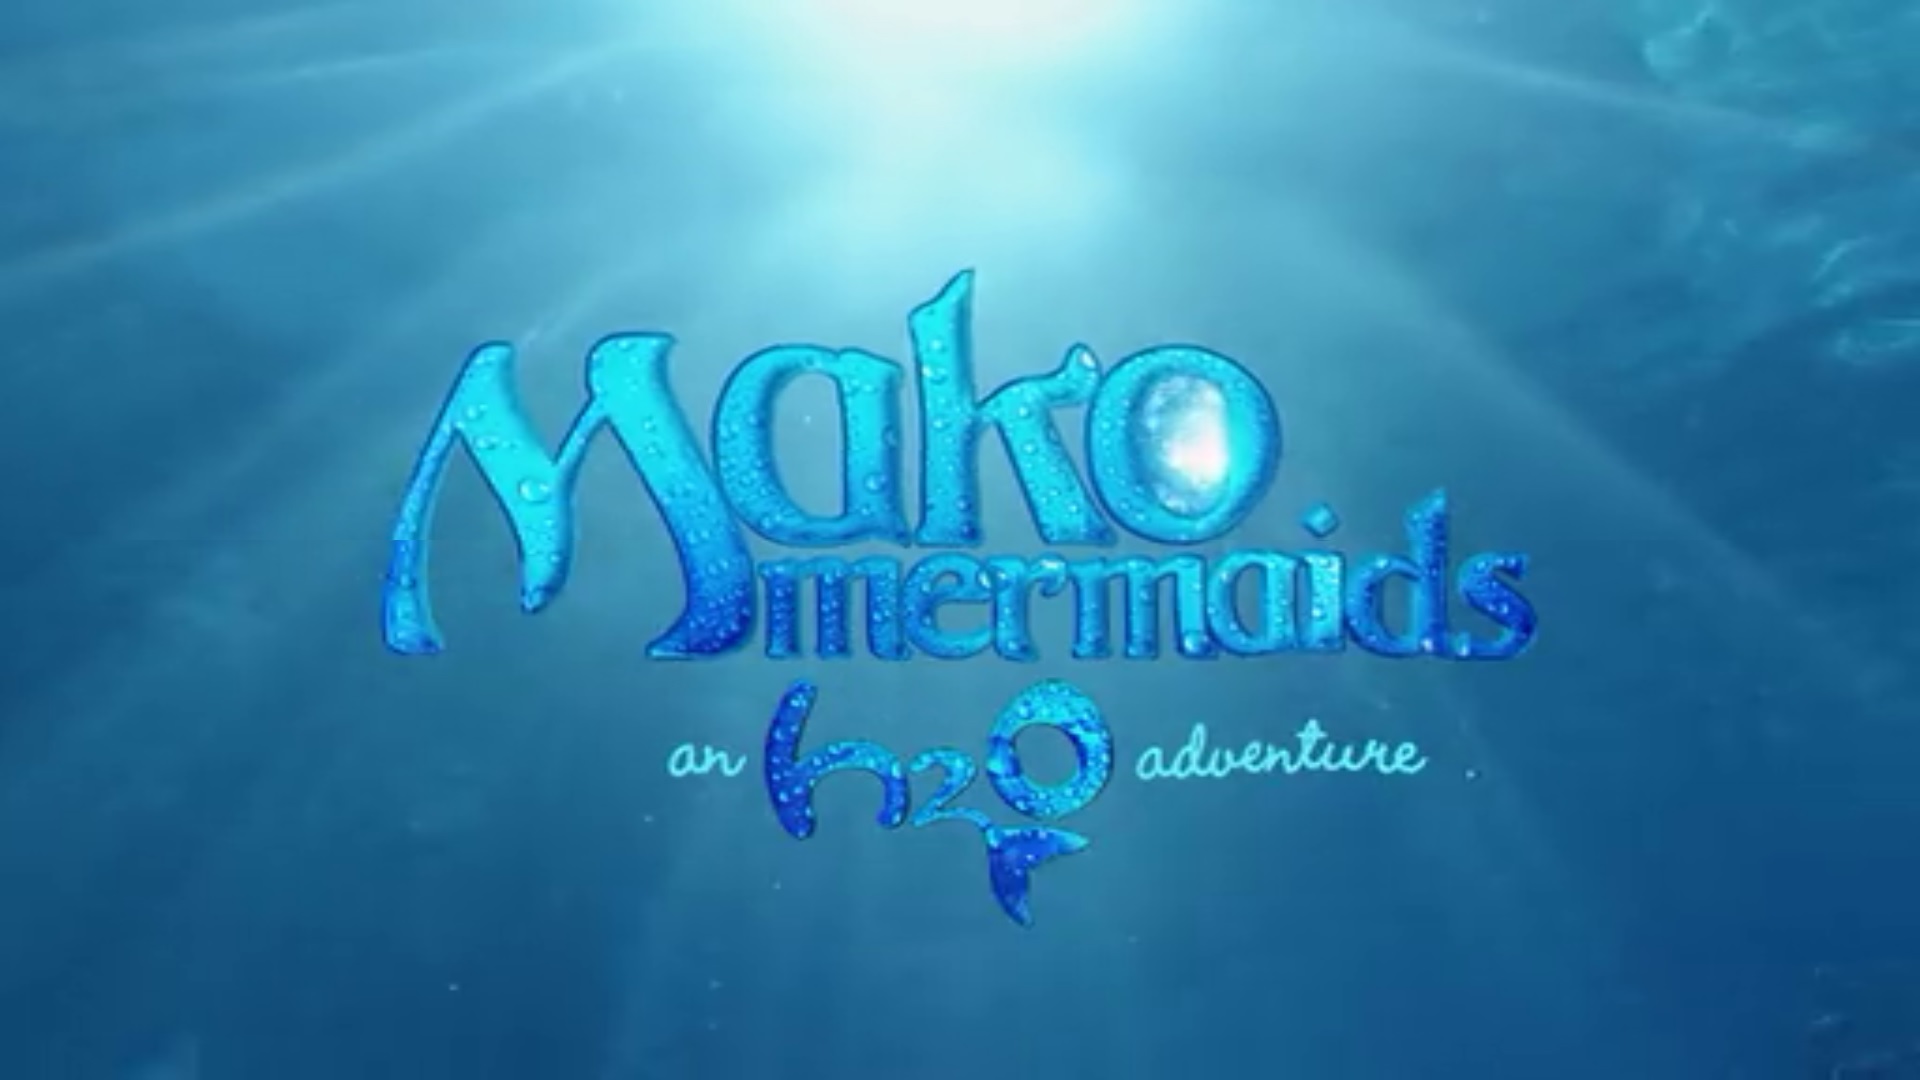 Mako Mermaids, Season 3: Mako Mermaids, Season 3 Part 1 - TV di